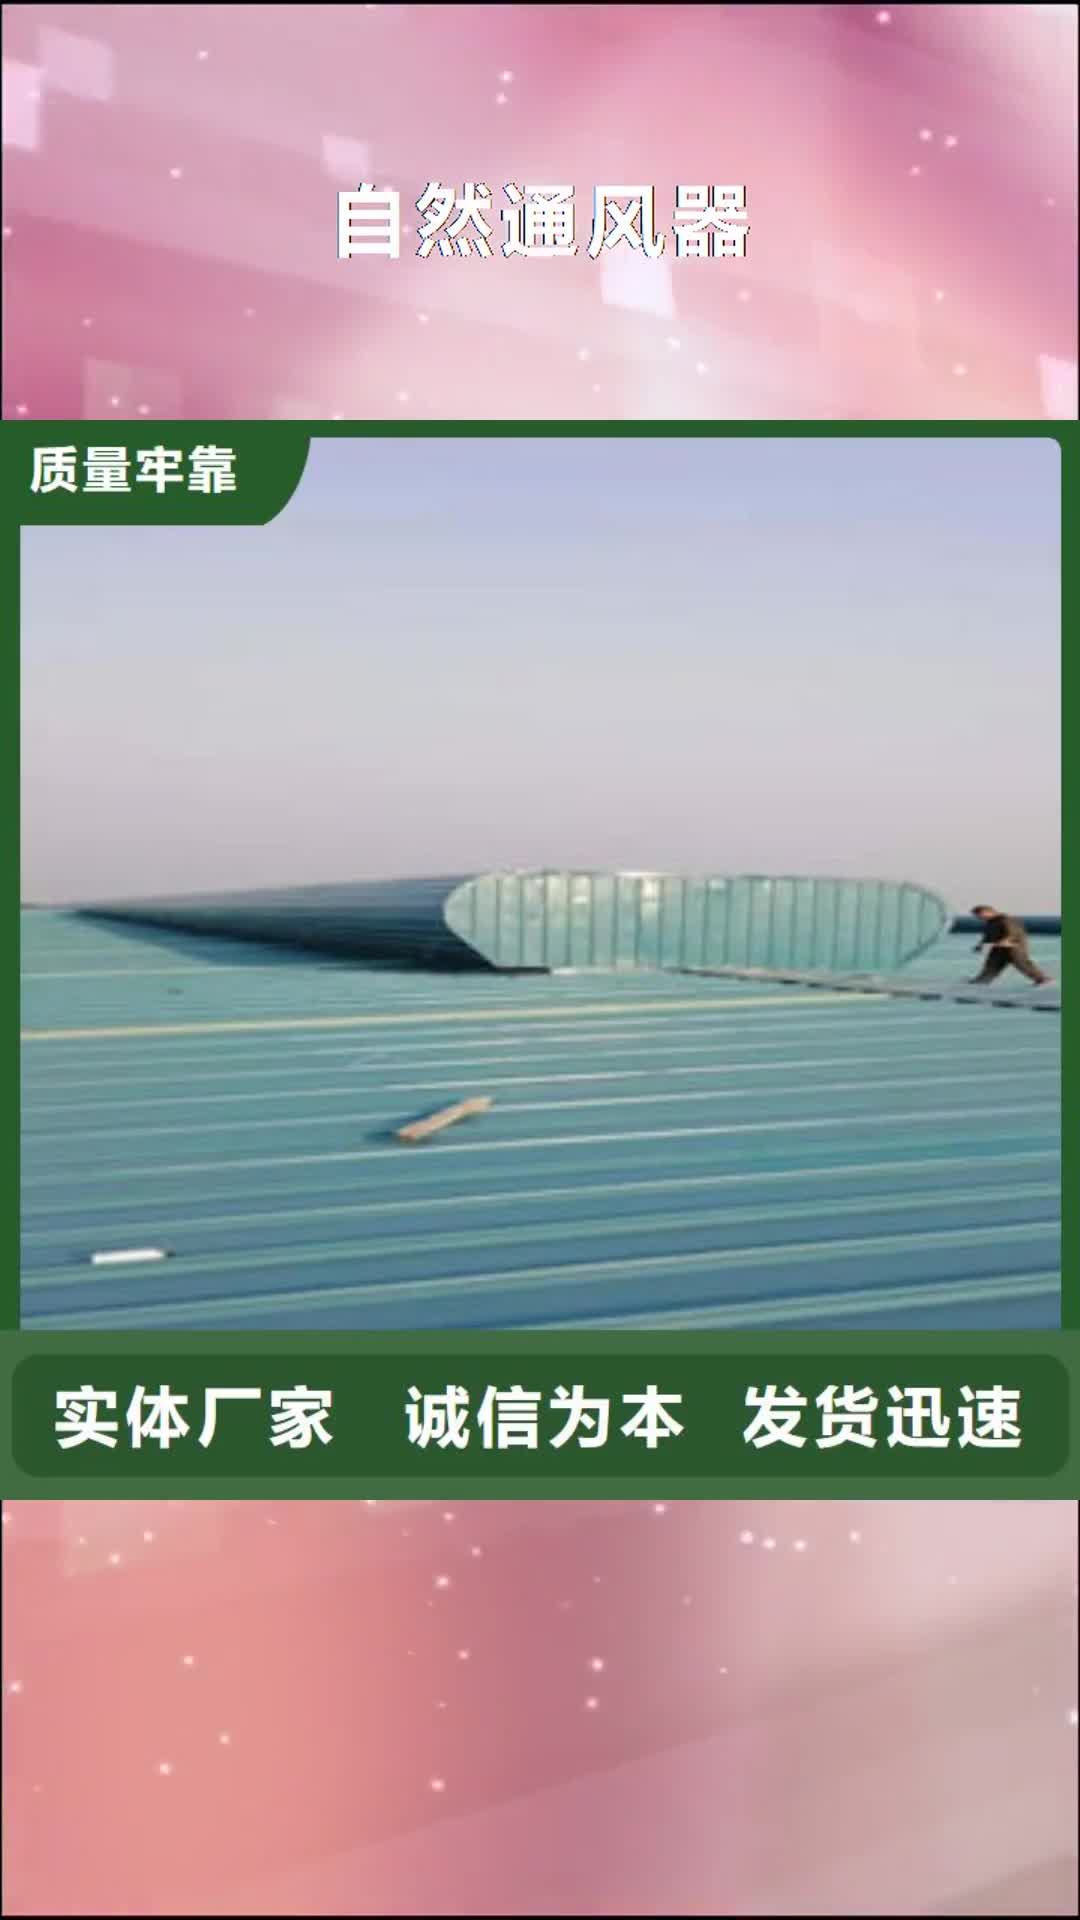 武汉【自然通风器】,通风采光天窗每个细节都严格把关